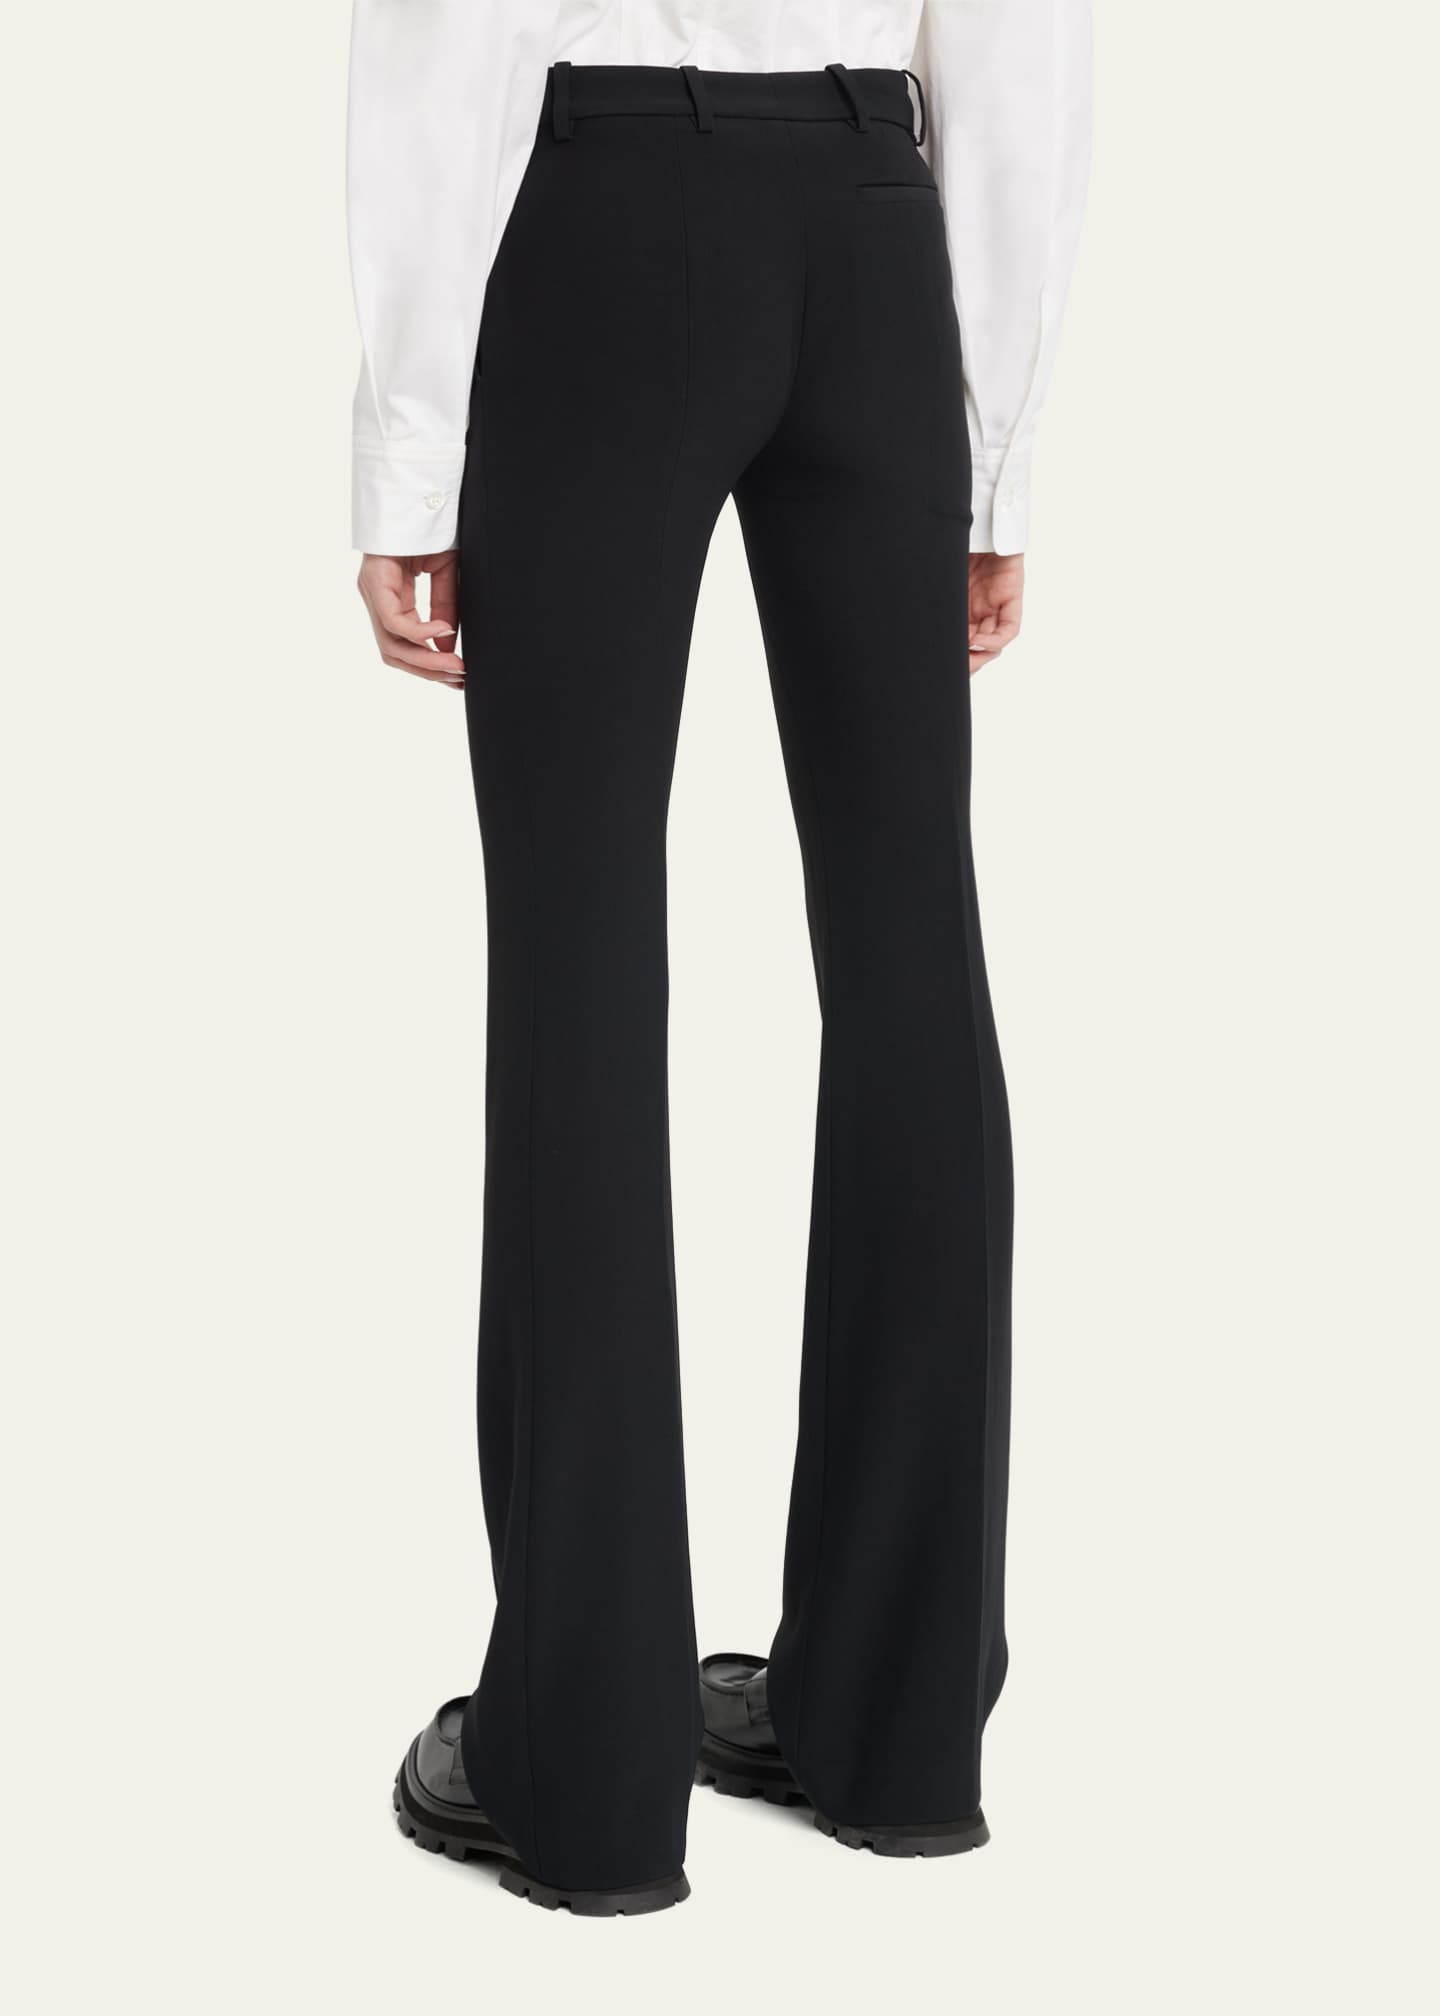 Alexander McQueen Classic Suiting Pants - Bergdorf Goodman